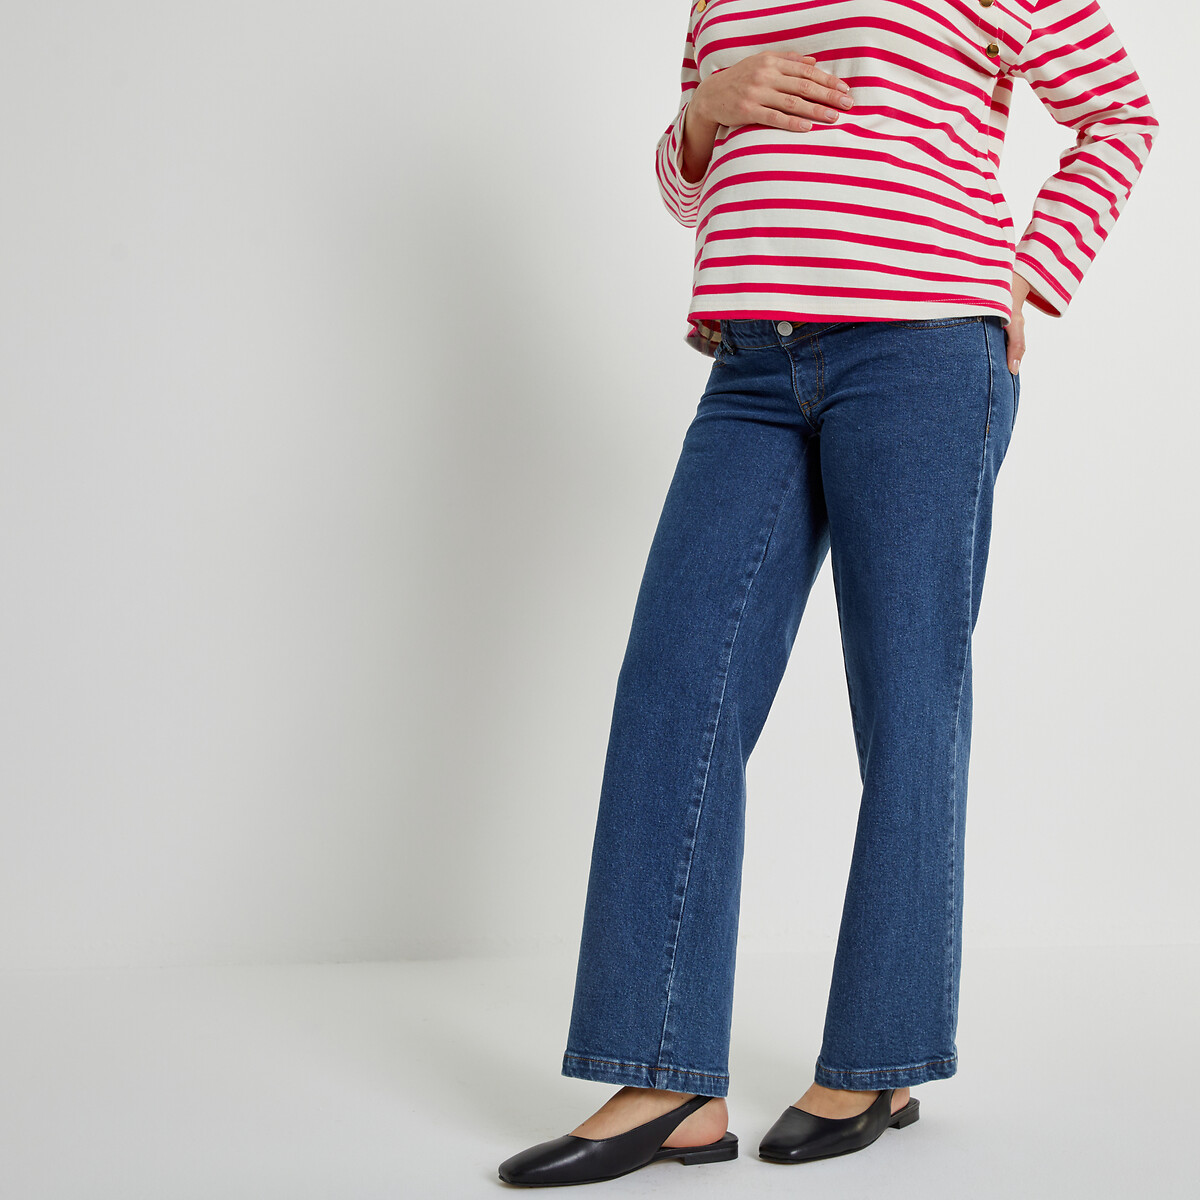 юбка для периода беременности прямая джинсовая 40 fr 46 rus синий Джинсы широкие для периода беременности 40 (FR) - 46 (RUS) синий